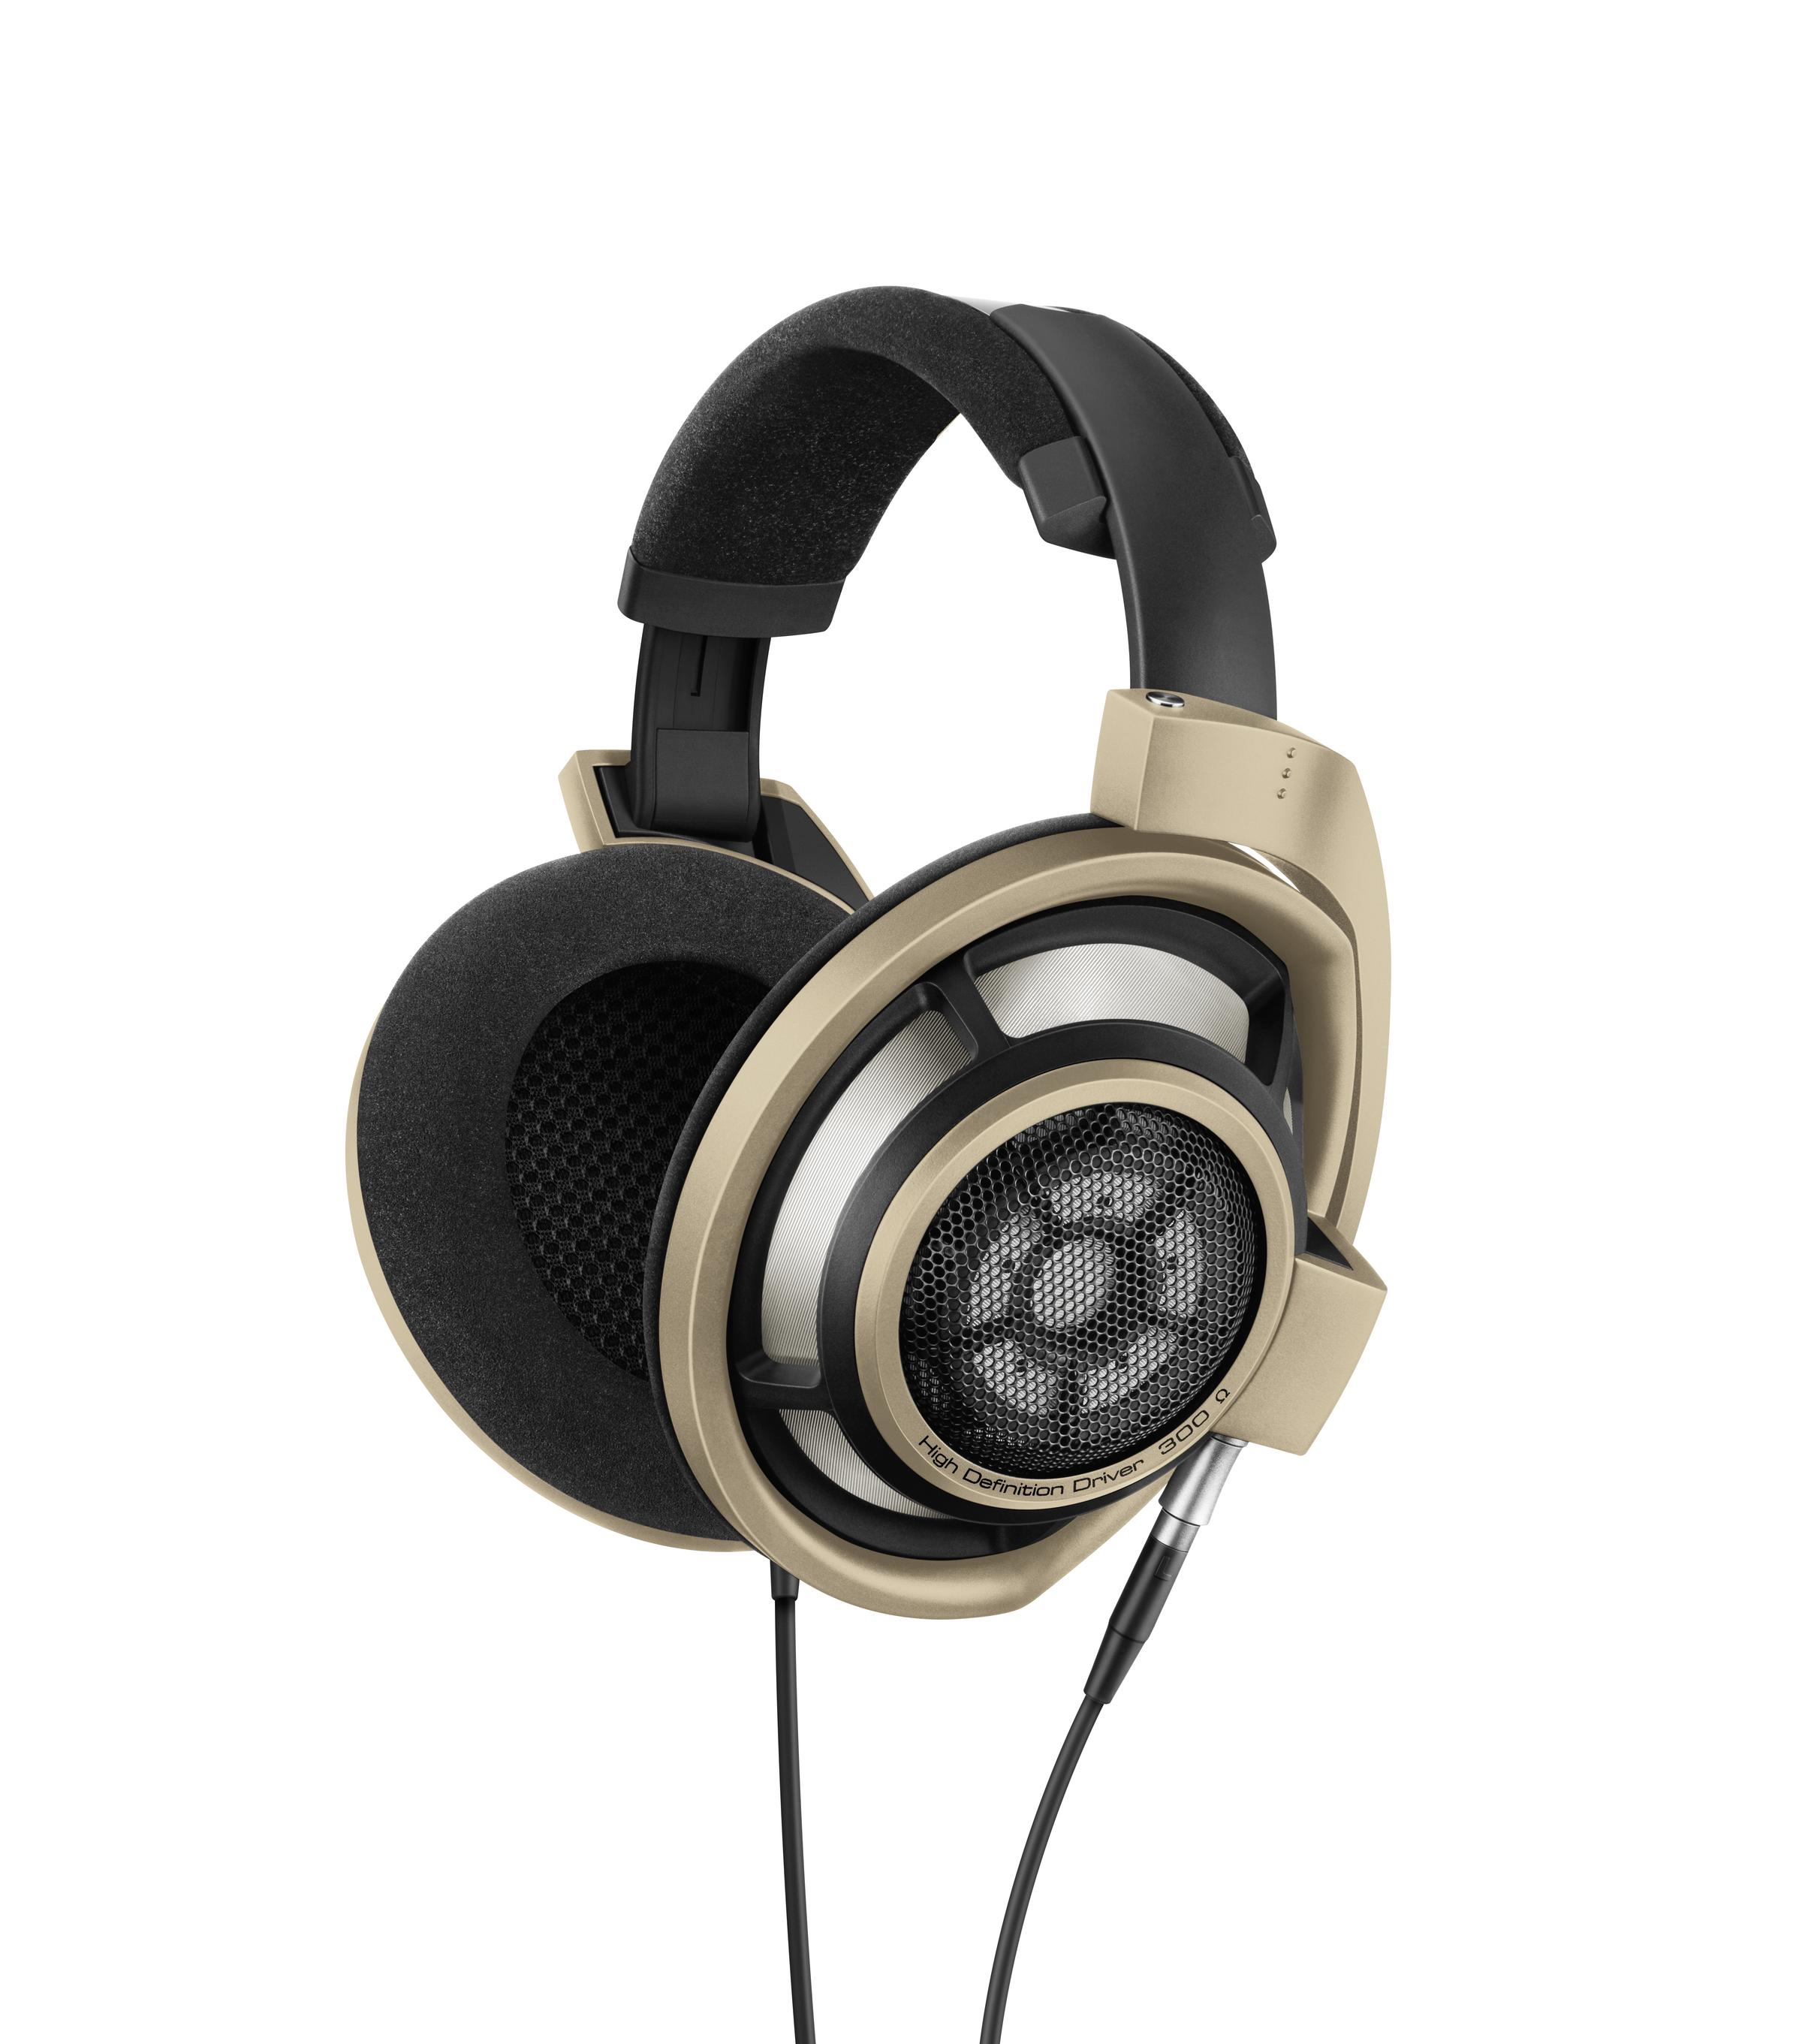 75年卓越音质的缔造者 森海塞尔发布HD 800S 75周年纪念版耳机